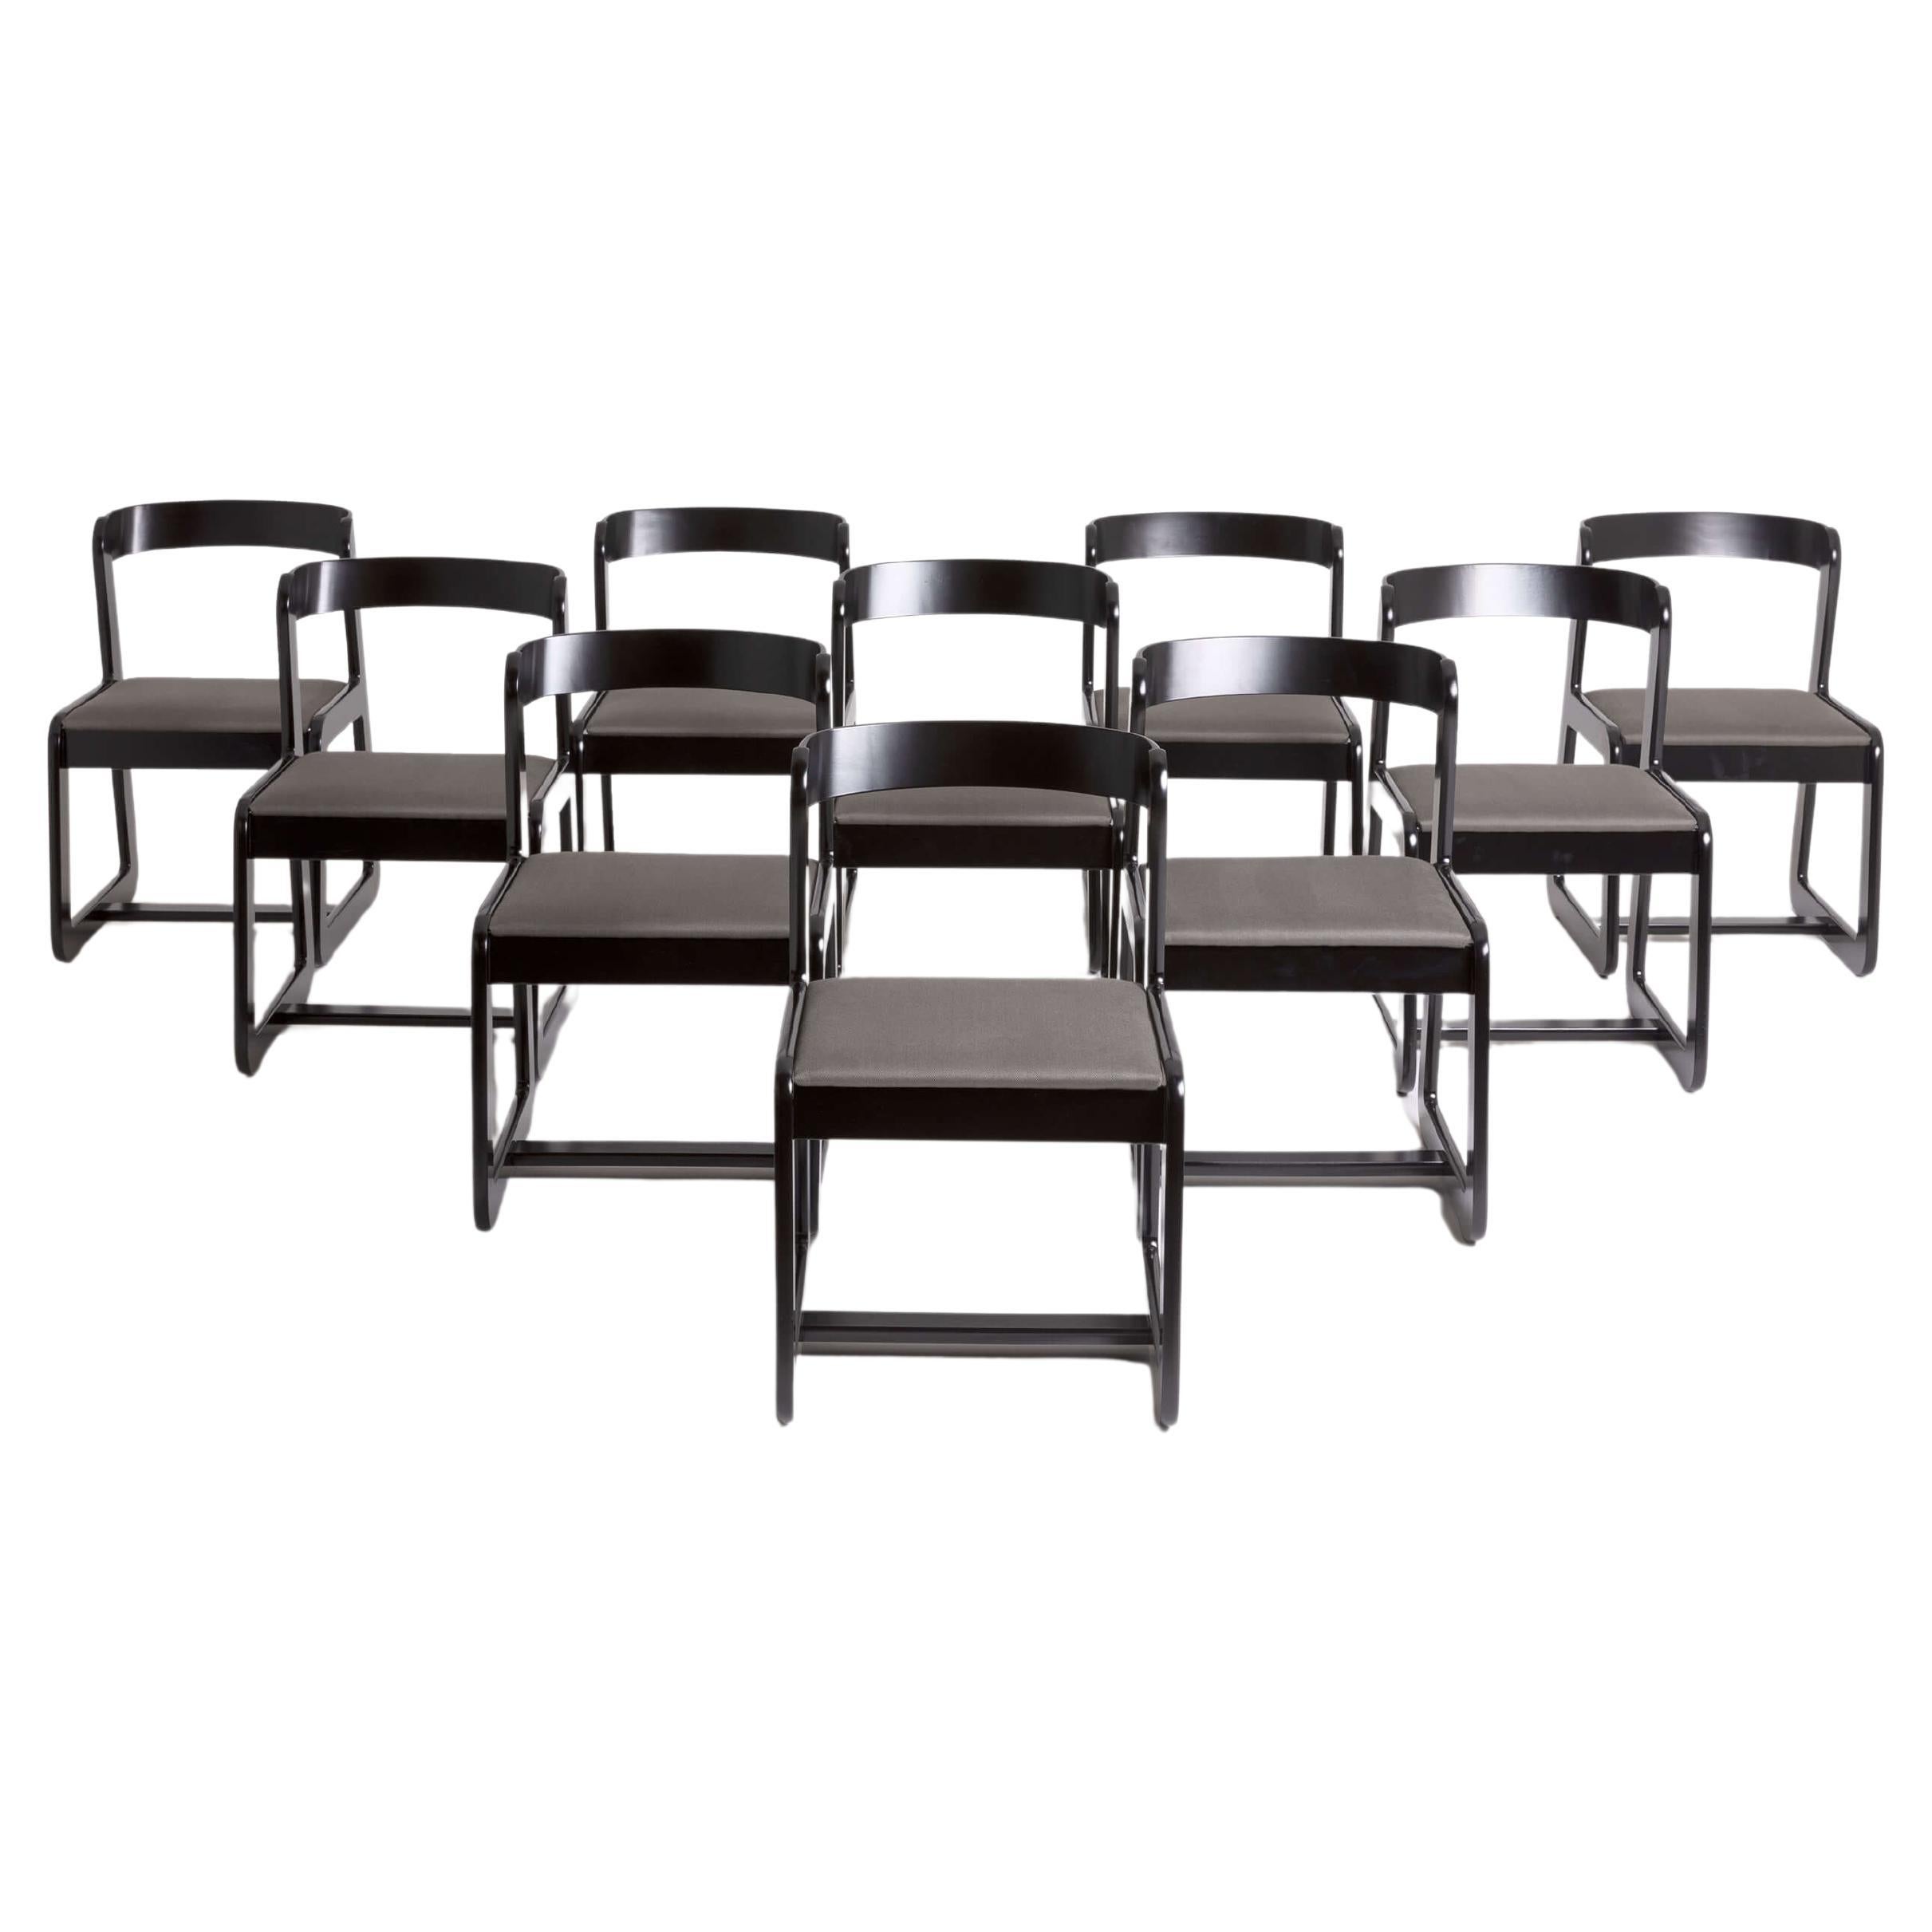 Ten Dining Chairs for Mario Sabot: Black Lacquer, circa 1970